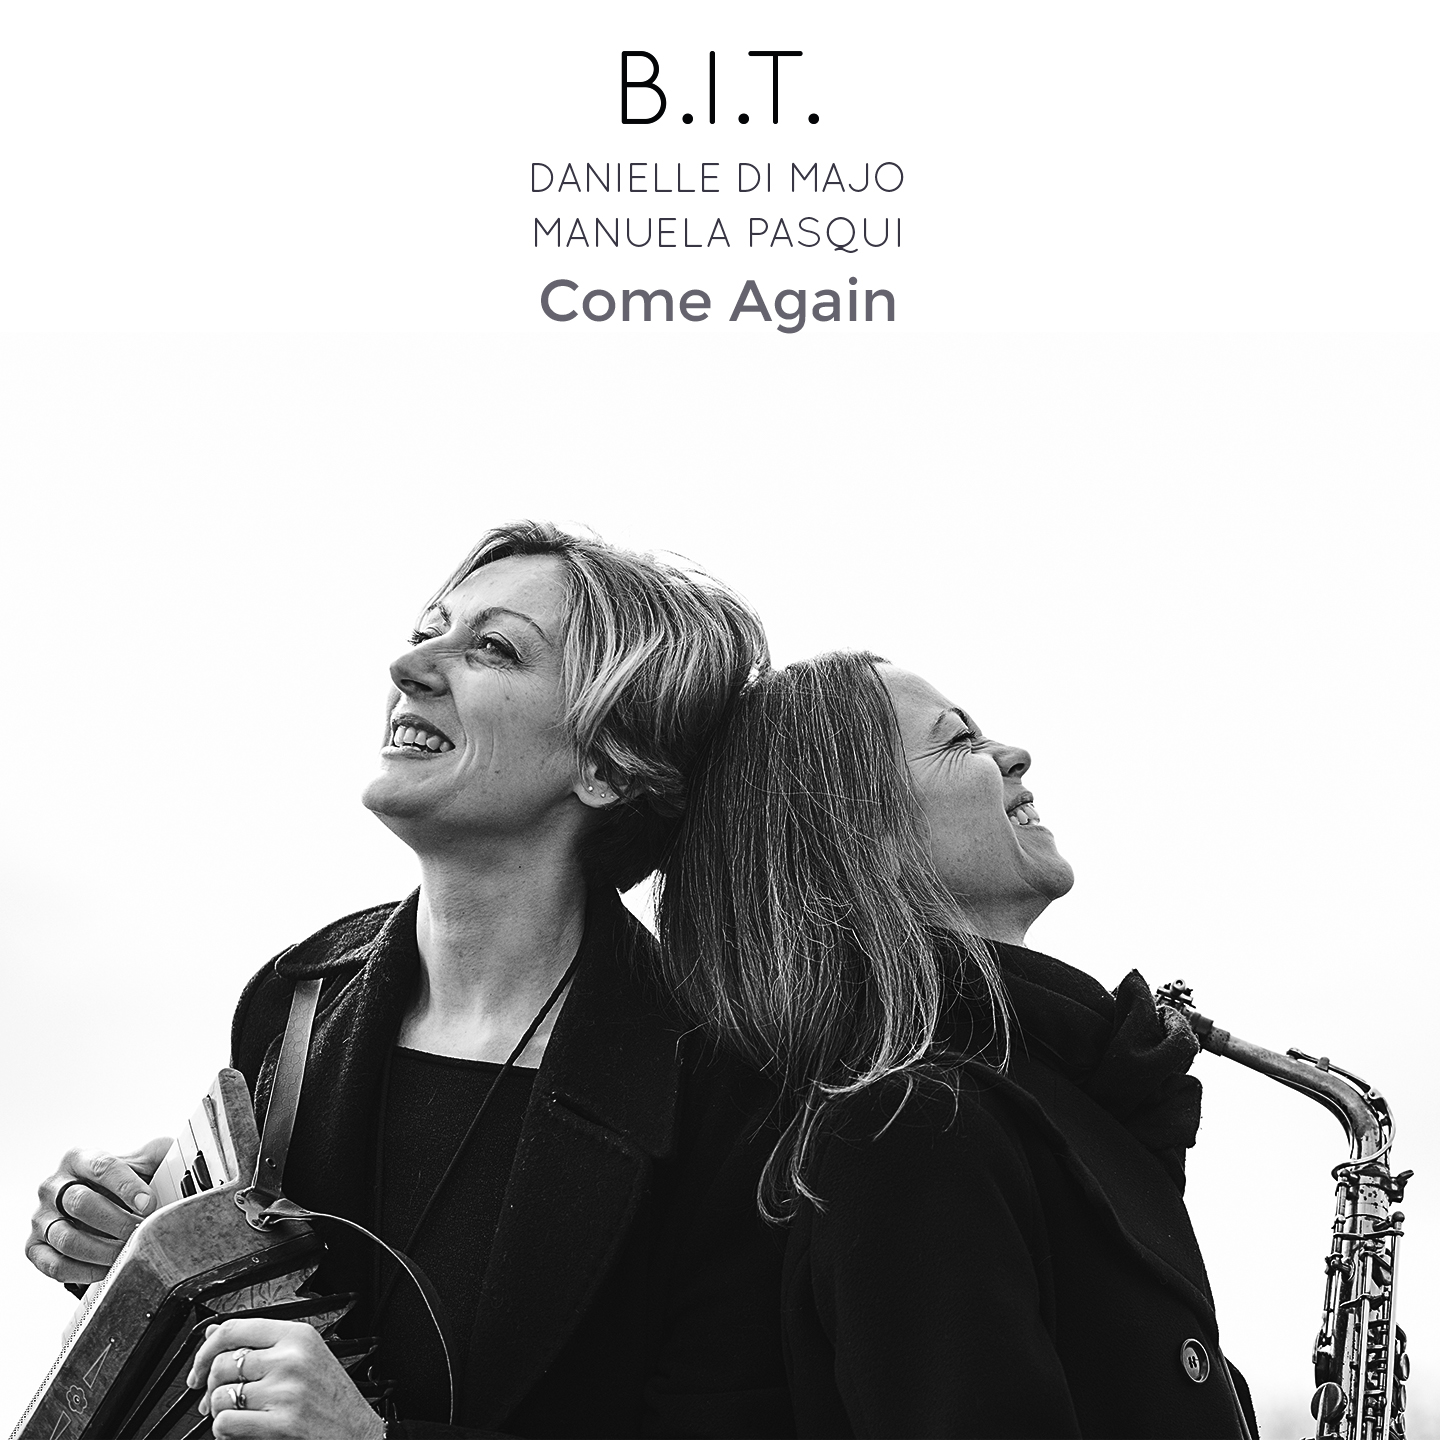 B.I.T. Danielle Di Majo e Manuela Pasqui: esce il disco “Come Again” per Filibusta Records